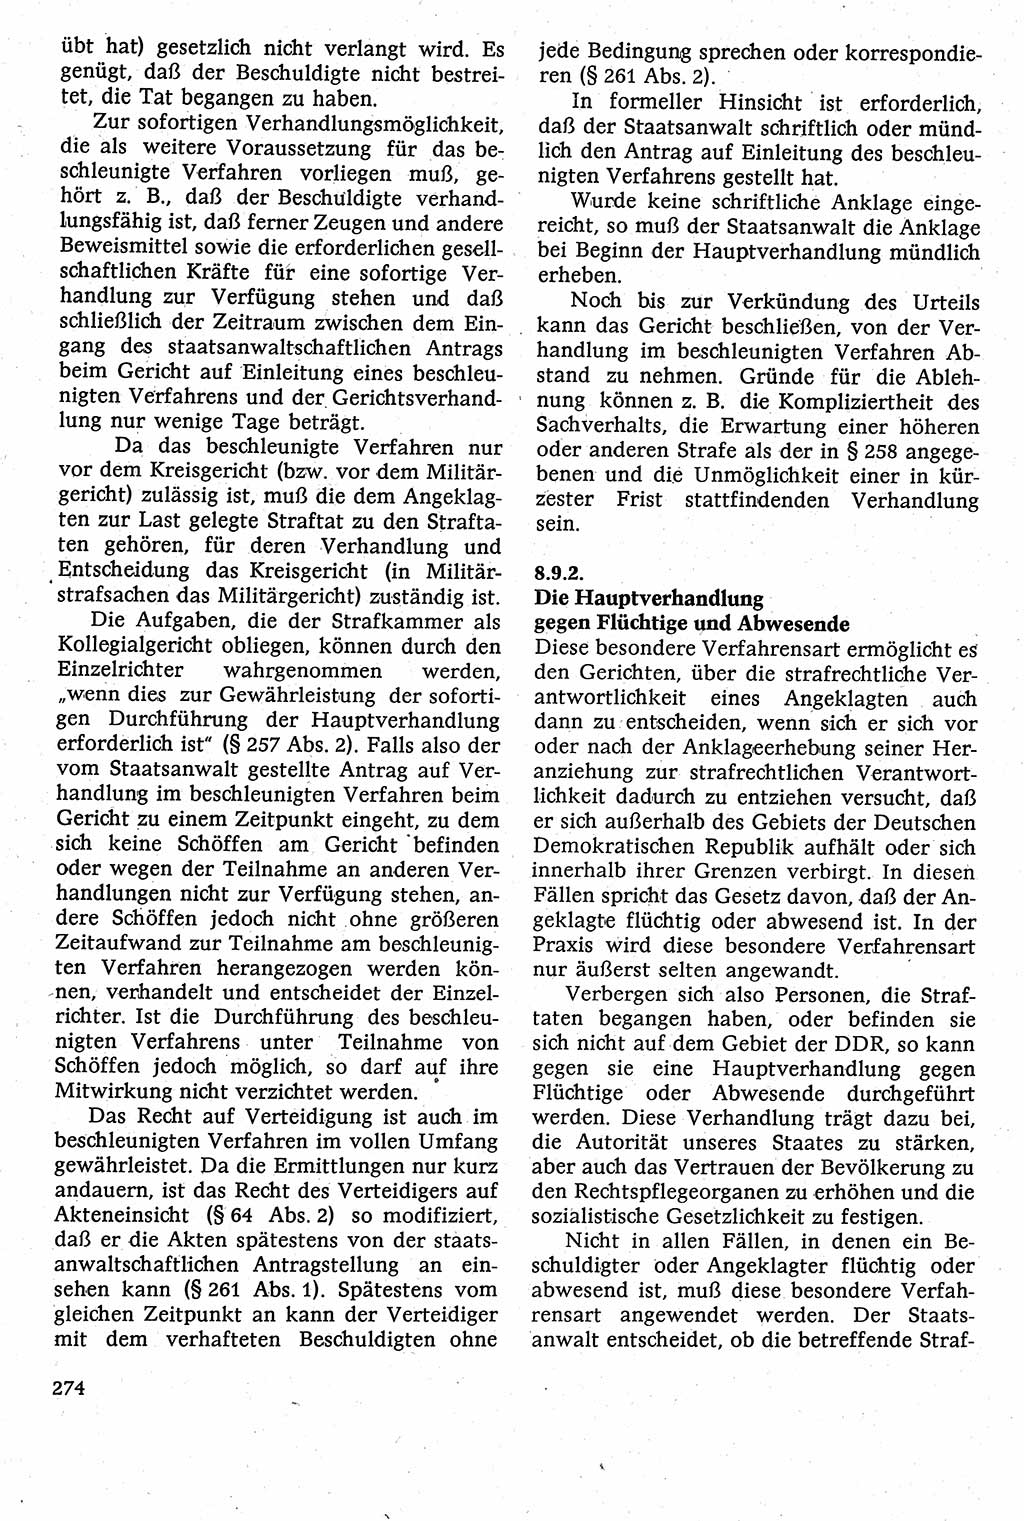 Strafverfahrensrecht [Deutsche Demokratische Republik (DDR)], Lehrbuch 1982, Seite 274 (Strafverf.-R. DDR Lb. 1982, S. 274)